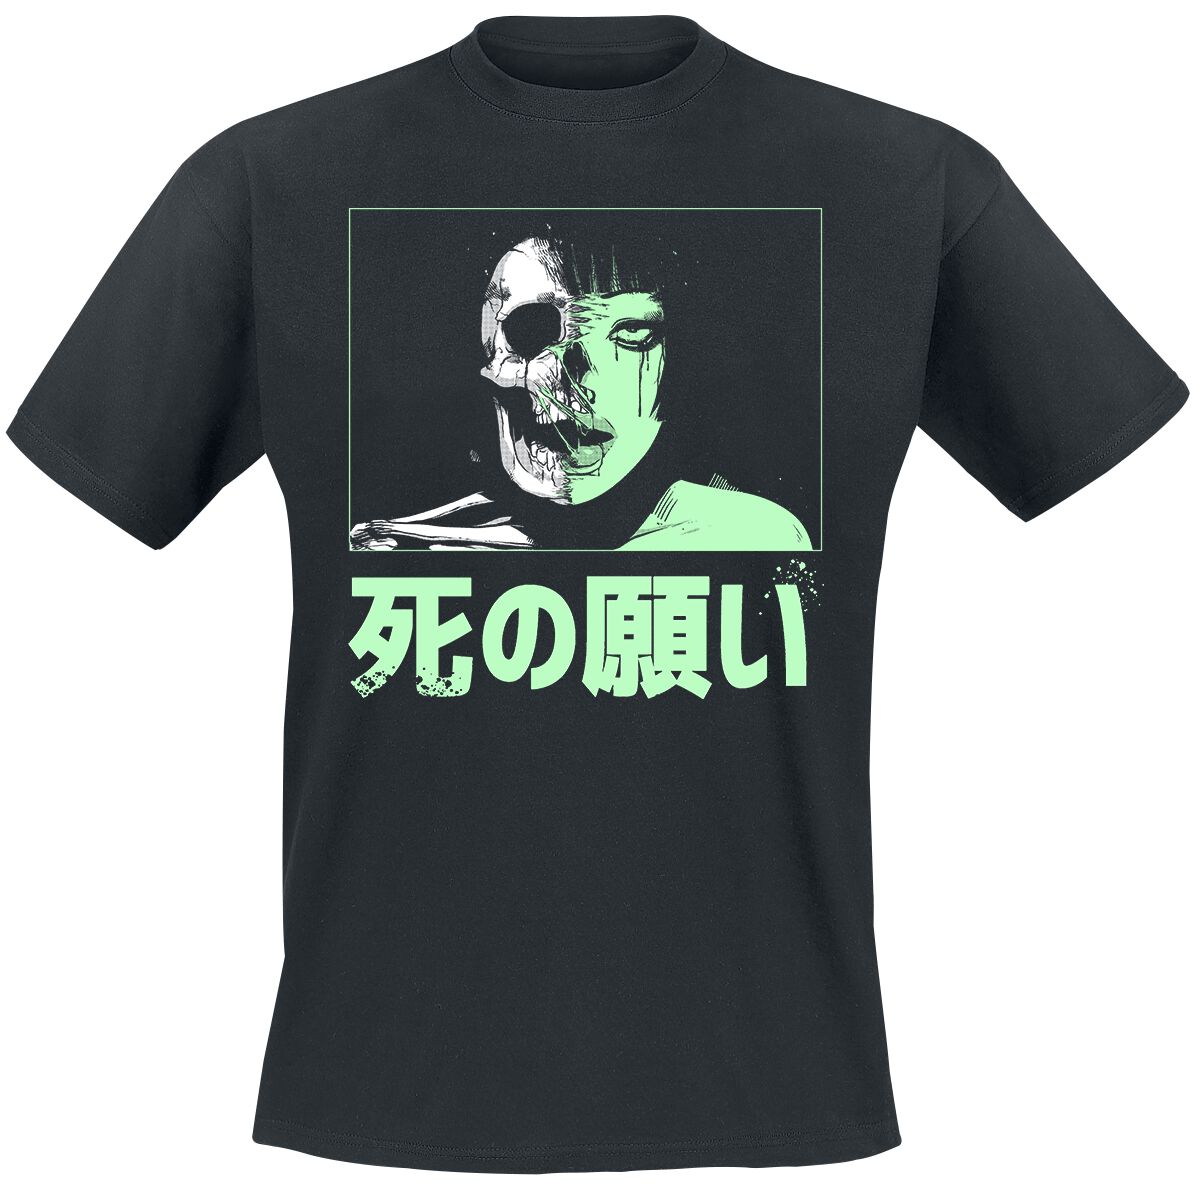 Zombie Makeout Club T-Shirt - ZMC - Half Life - S bis XL - für Männer - Größe XL - schwarz  - Lizenzierter Fanartikel